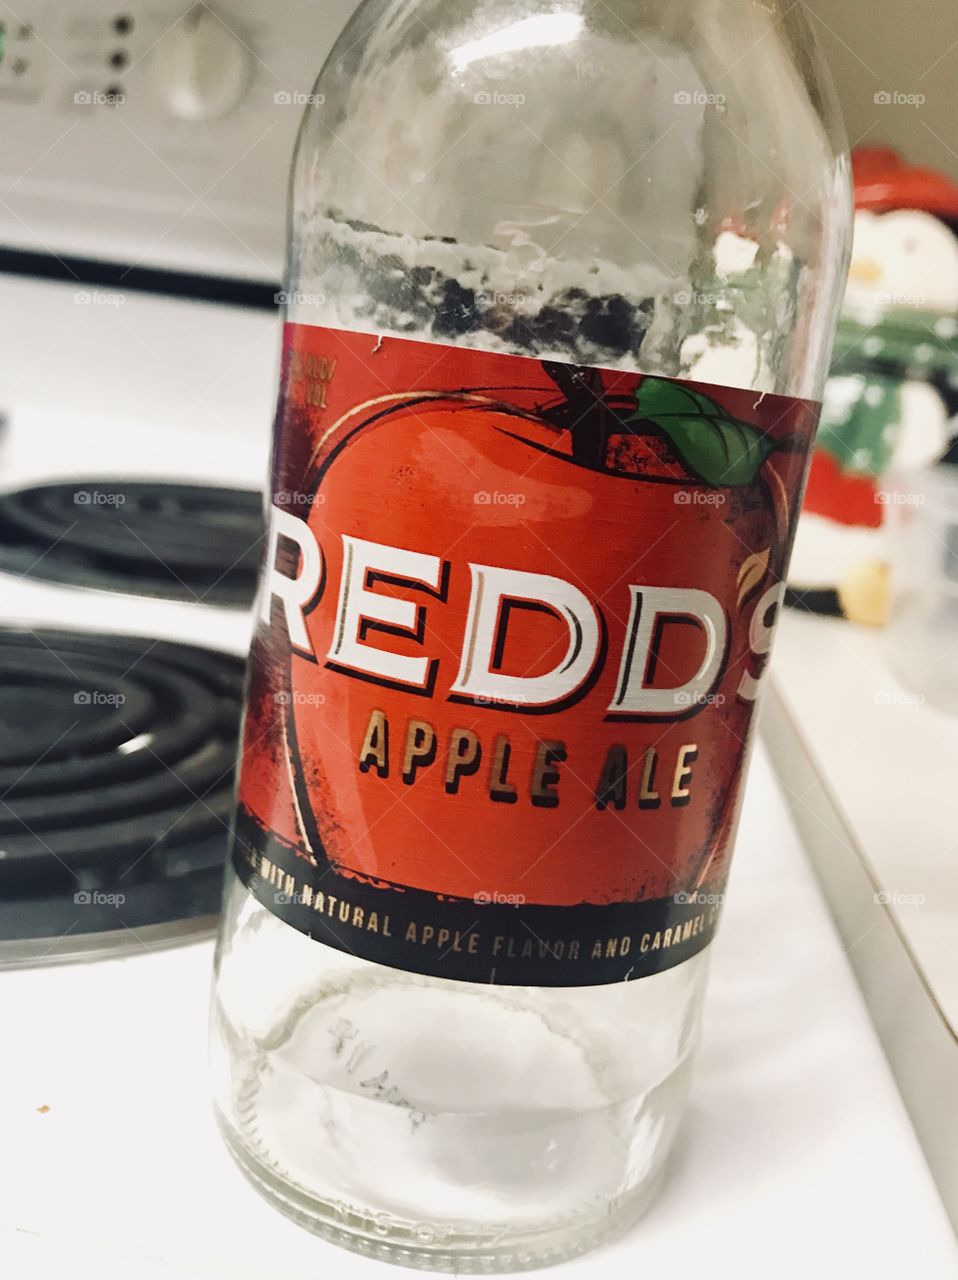 Emptied Redds Apple Ale bottle! 